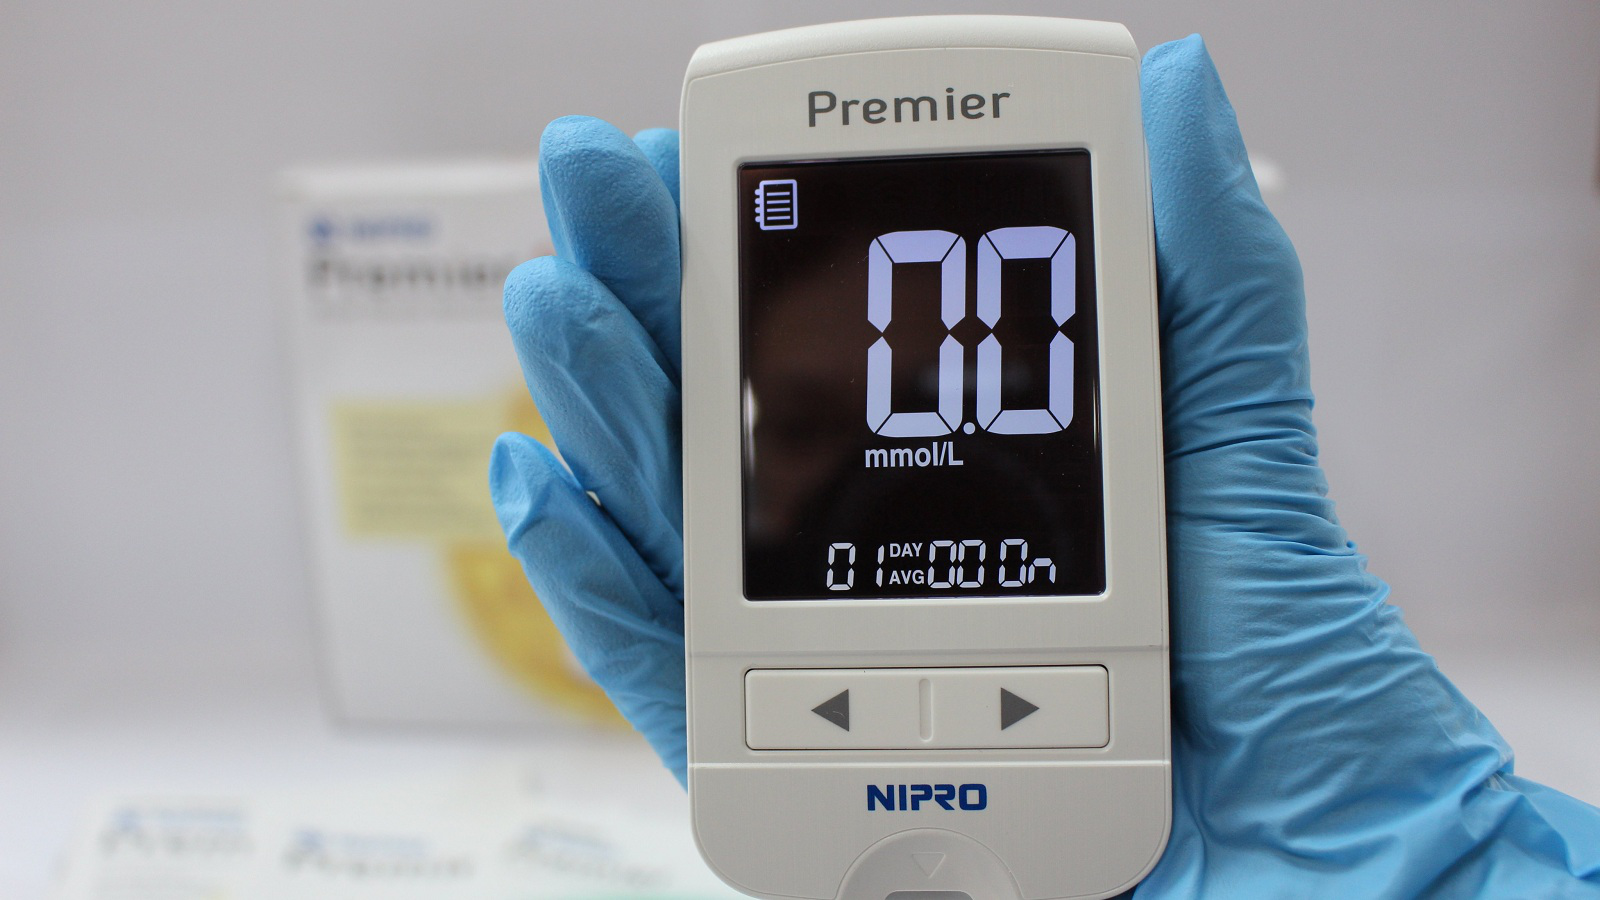 Máy đo đường huyết Nipro Premier Alpha cho kết quả chính xác đến 99.8%